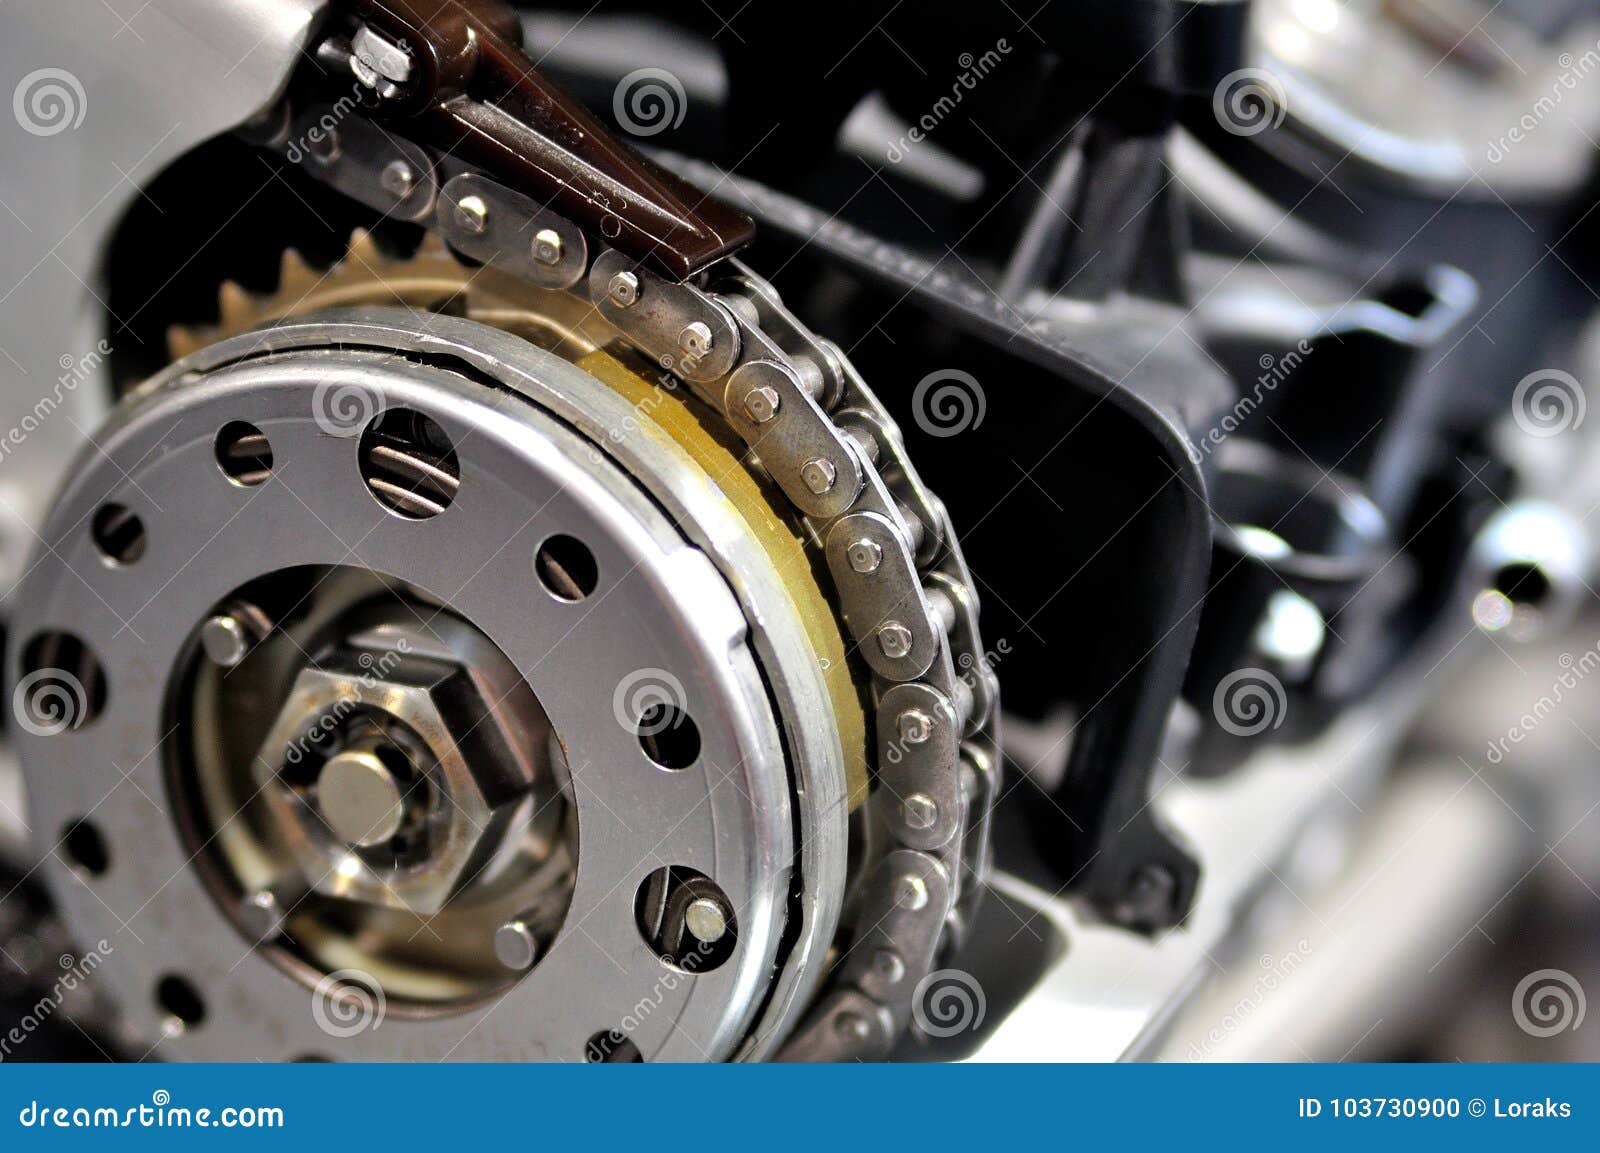 Steuerkette Von Einem Automotor Stockfoto - Bild von motor